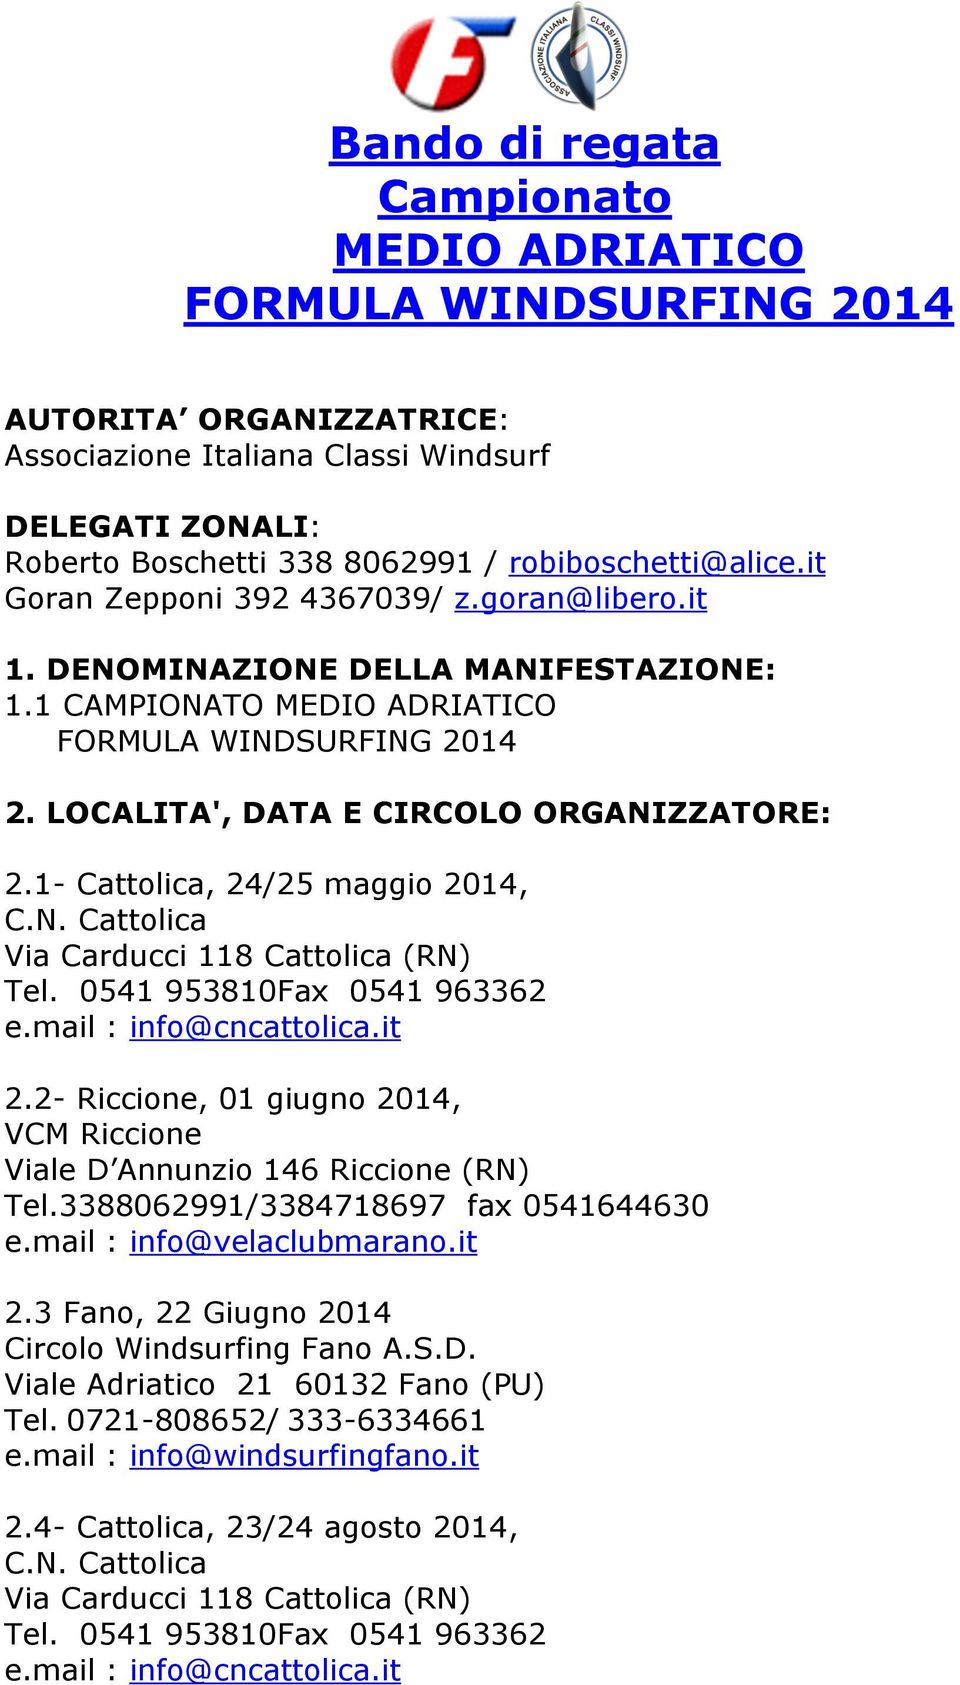 1- Cattolica, 24/25 maggio 2014, C.N. Cattolica Via Carducci 118 Cattolica (RN) Tel. 0541 953810Fax 0541 963362 e.mail : info@cncattolica.it 2.